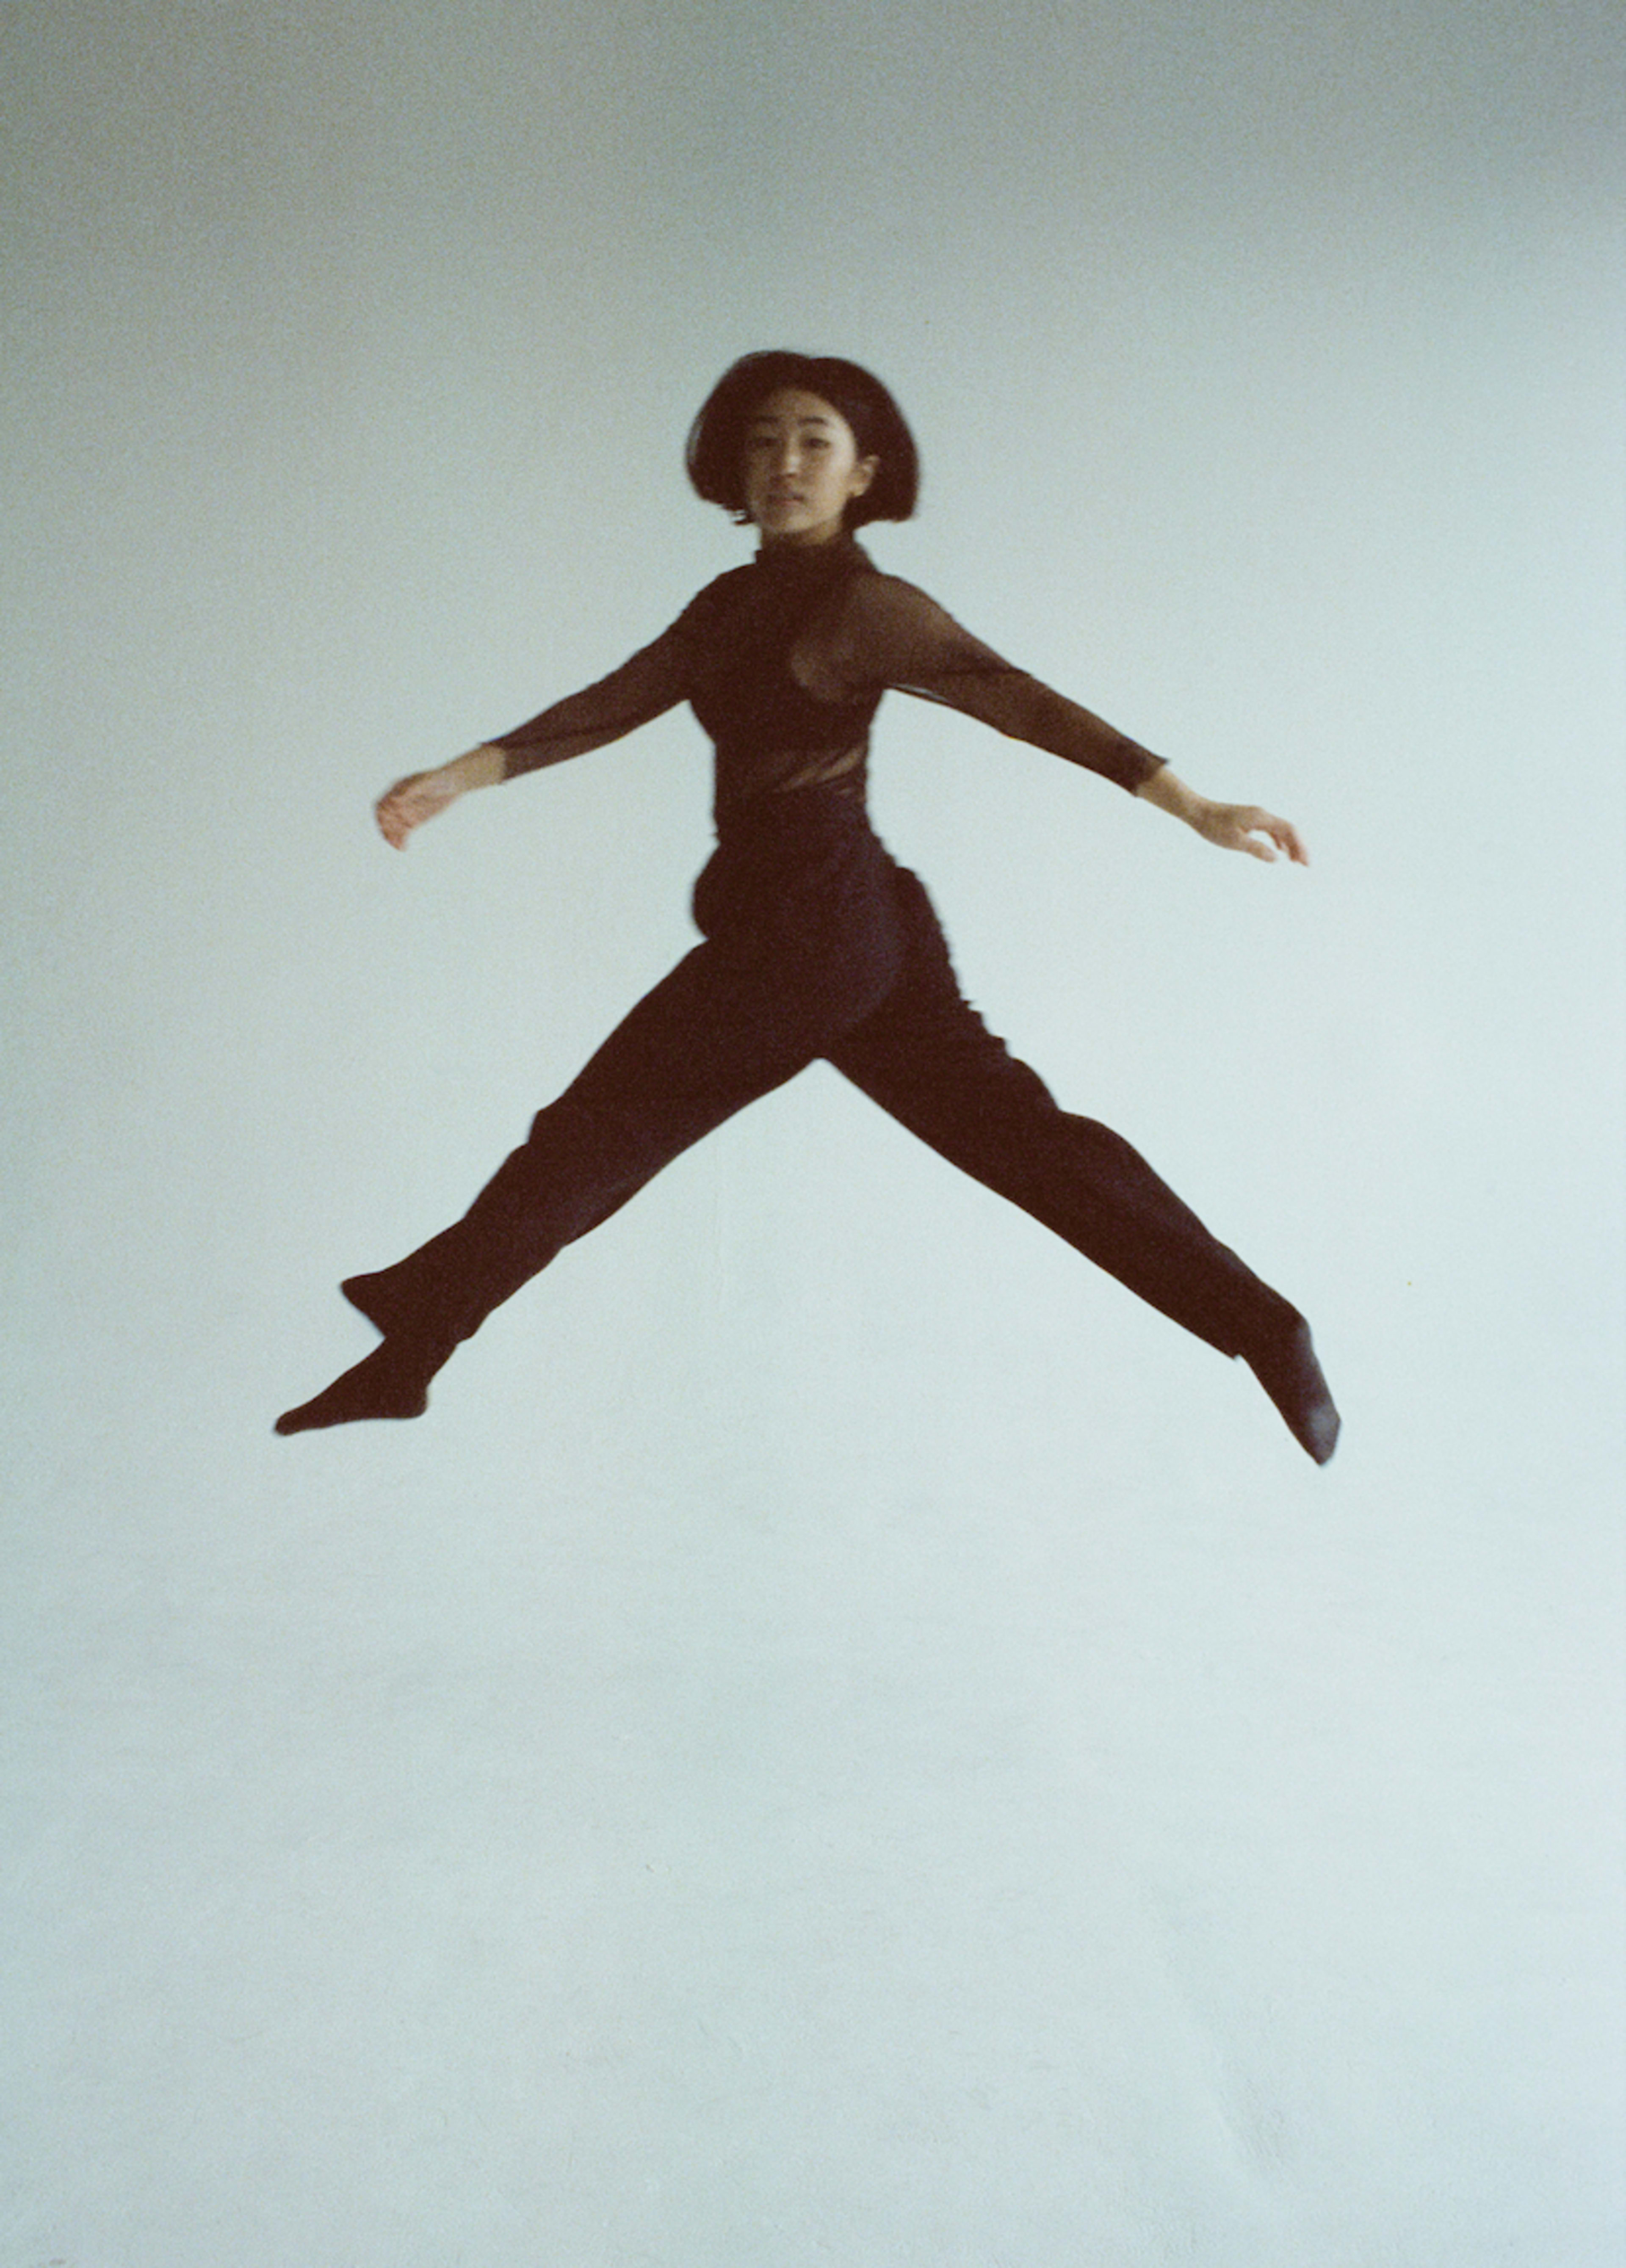 Eine Frau in einem schwarzen Outfit springt für ein Foto.